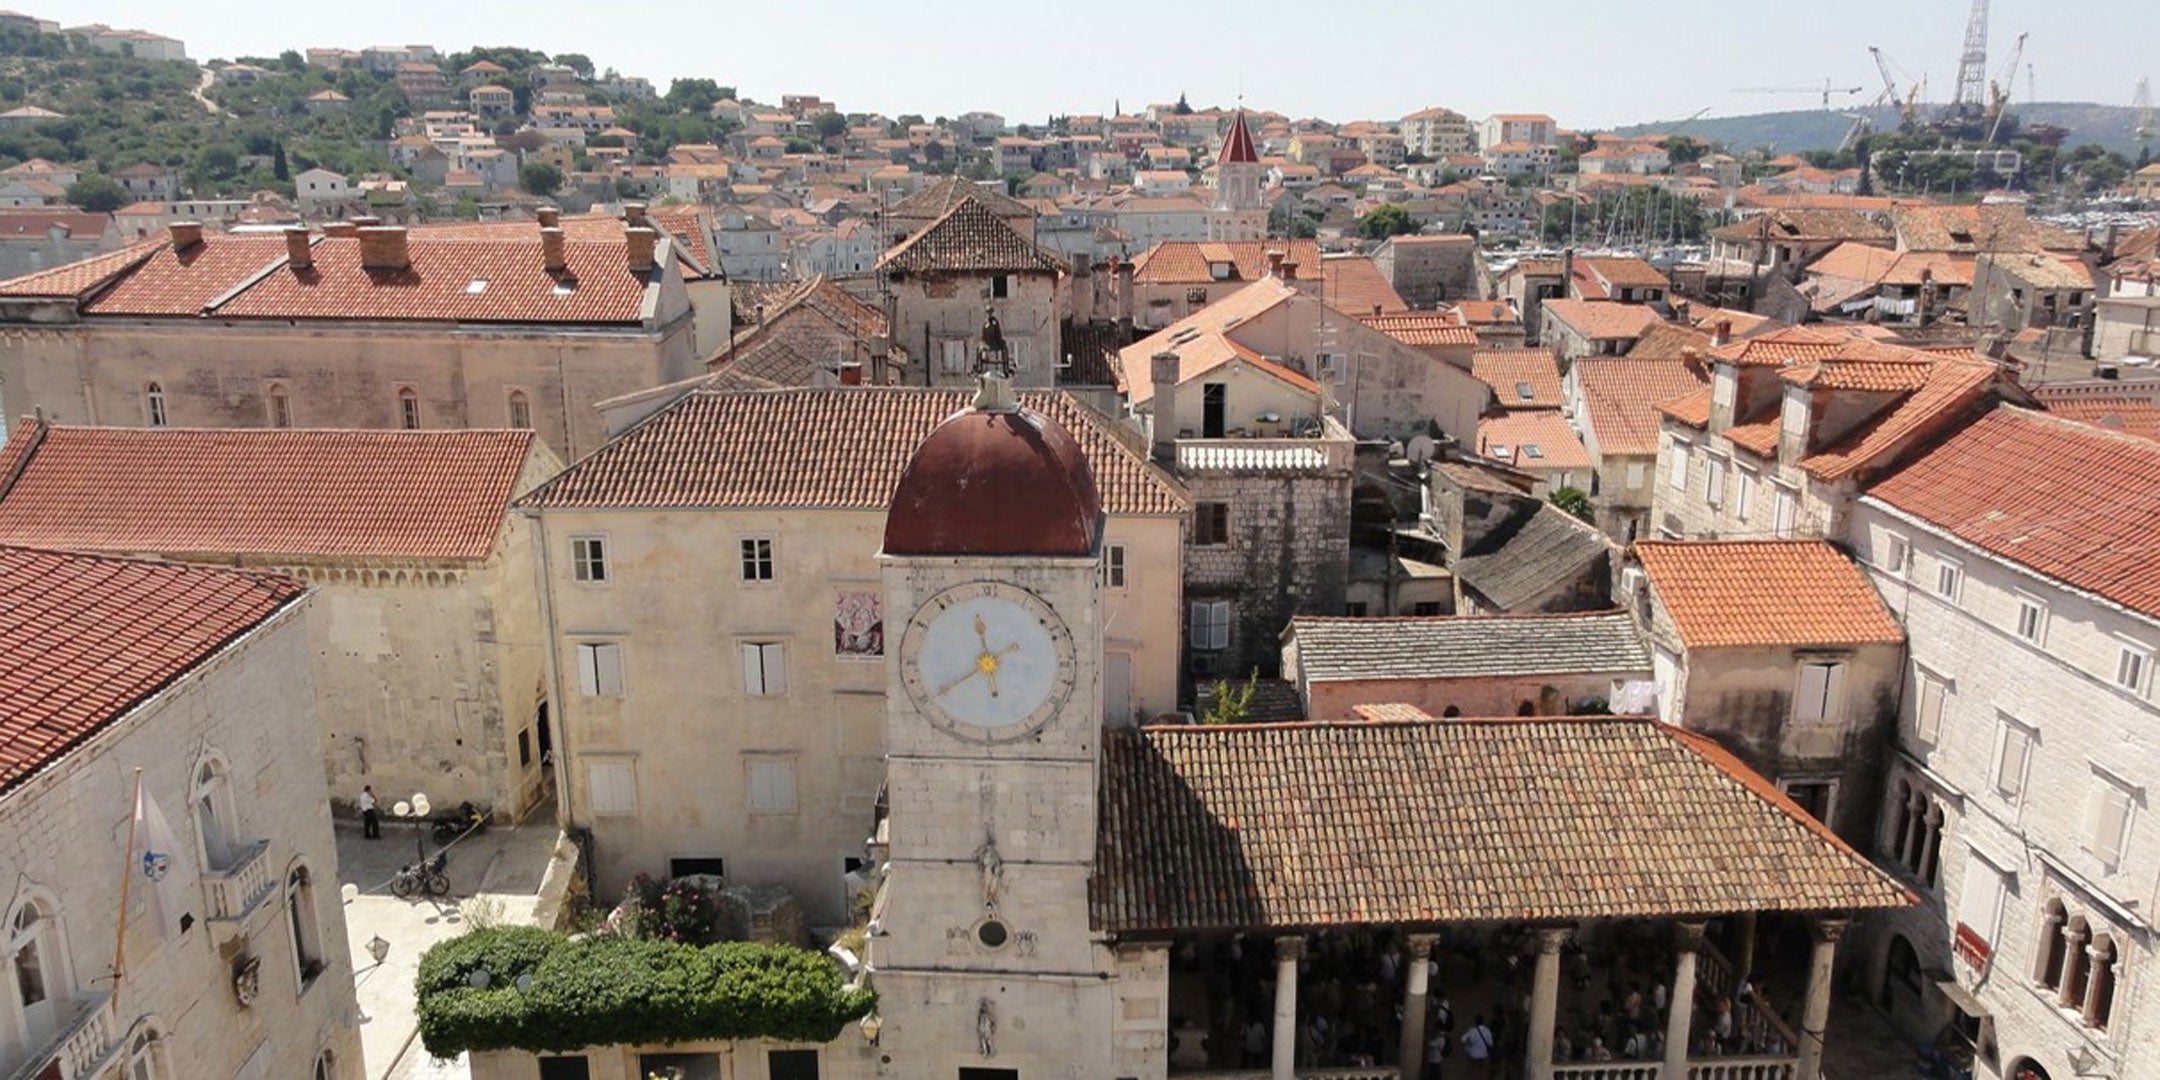 Trogir ist eine geschichtsträchtige Stadt in Dalmatien